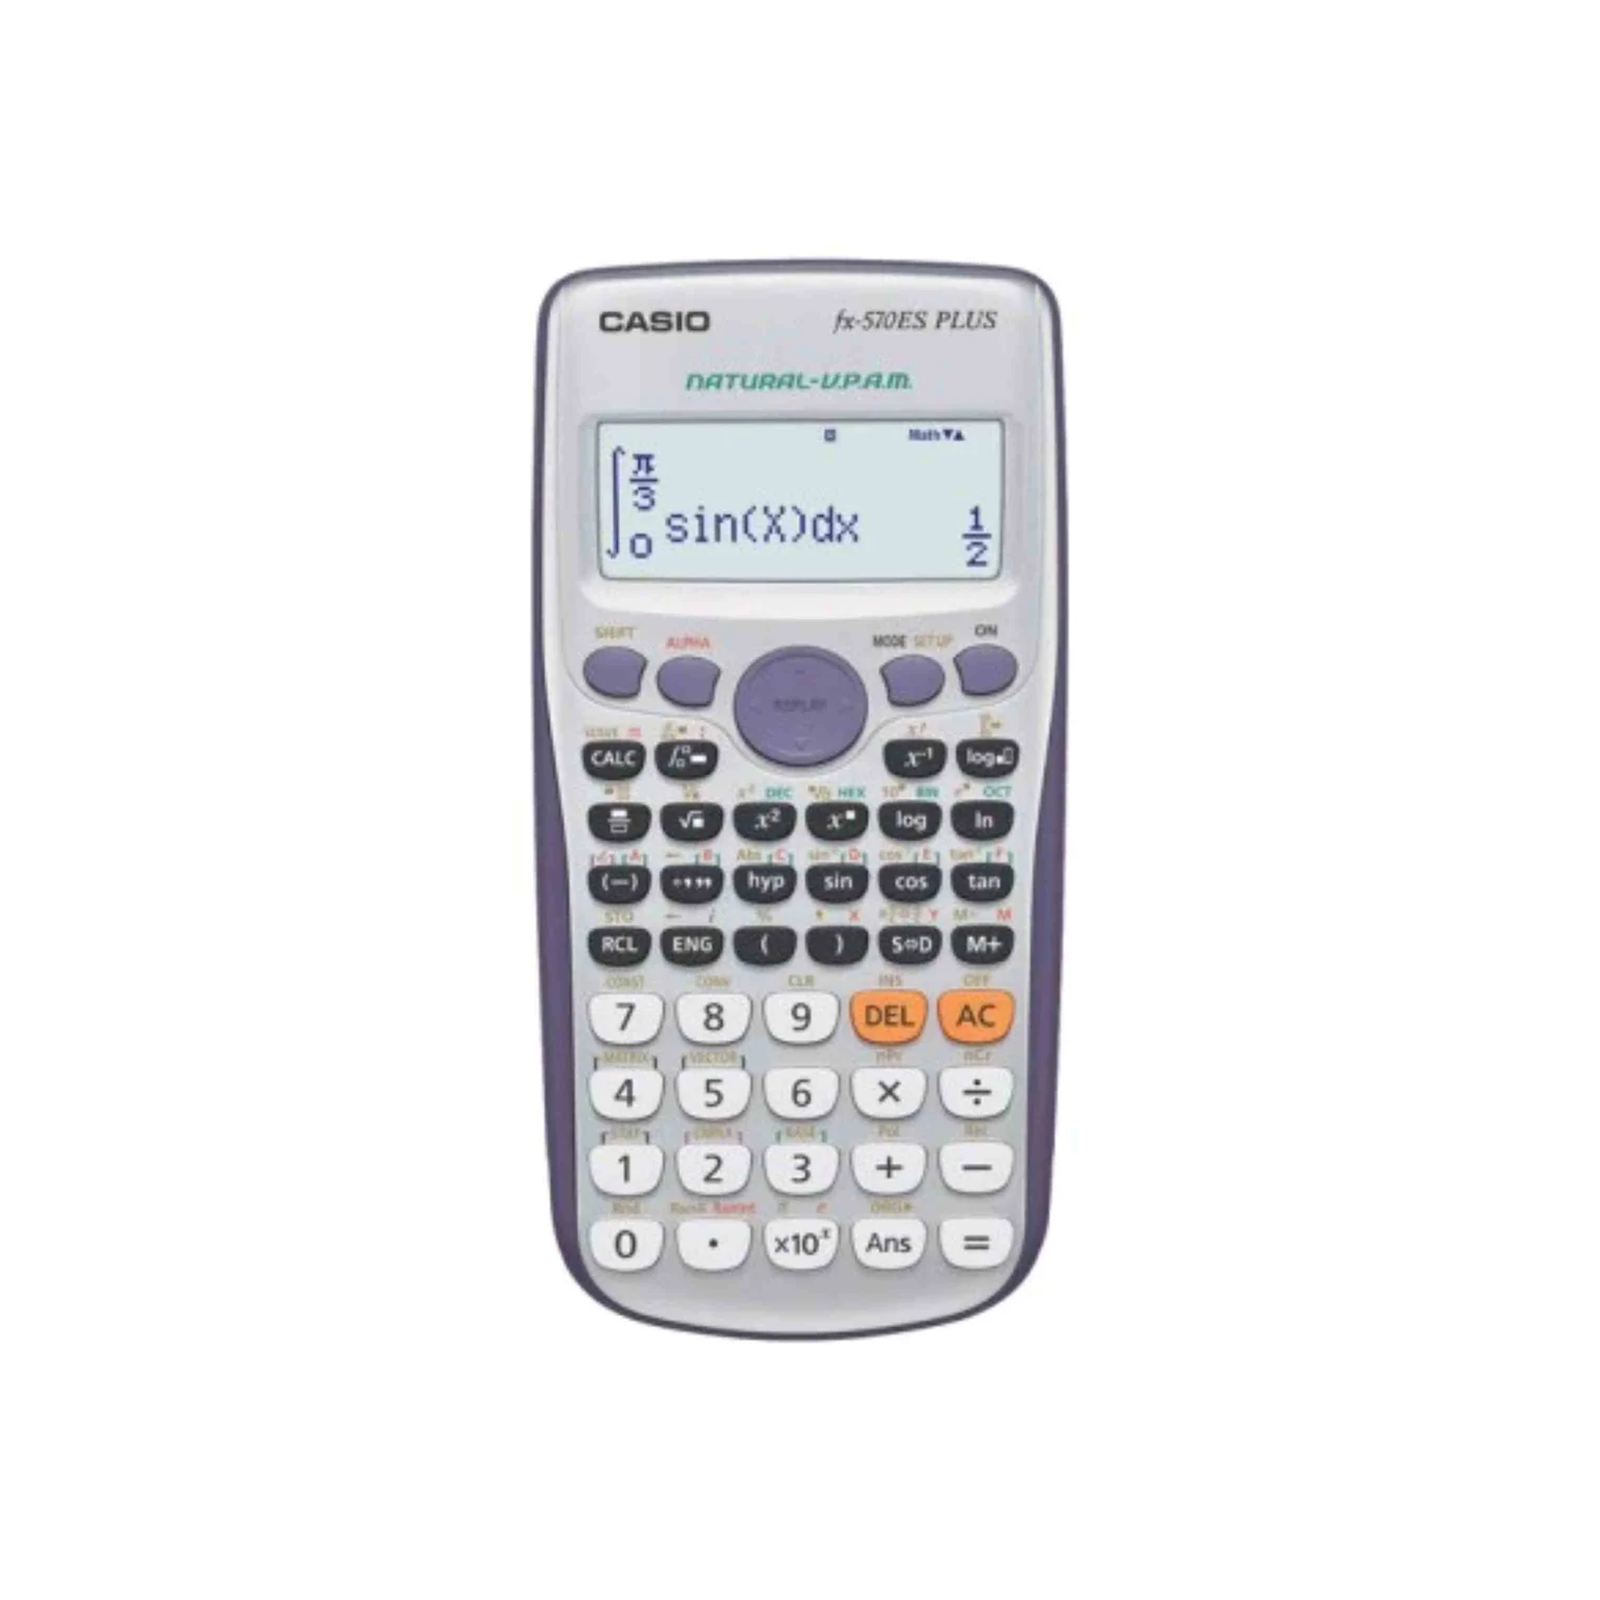 Casio Original Scientific Calculator FX-570 ES Plus